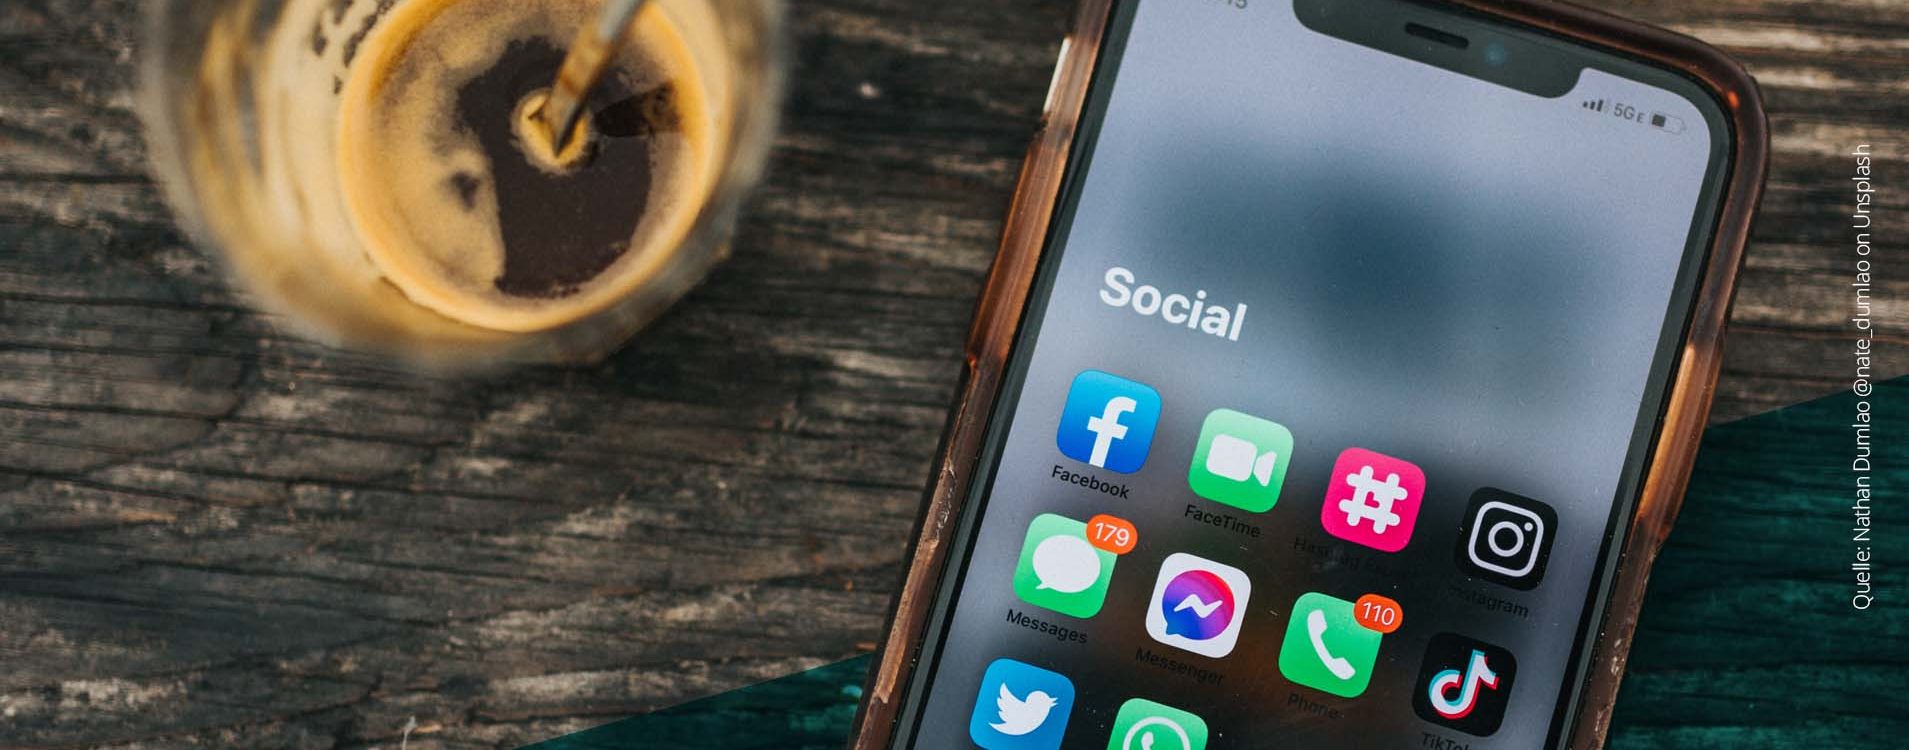 Handy auf einem Tisch mit einigen Social Media Apps auf dem Bildschirm, daneben eine Kaffeetasse